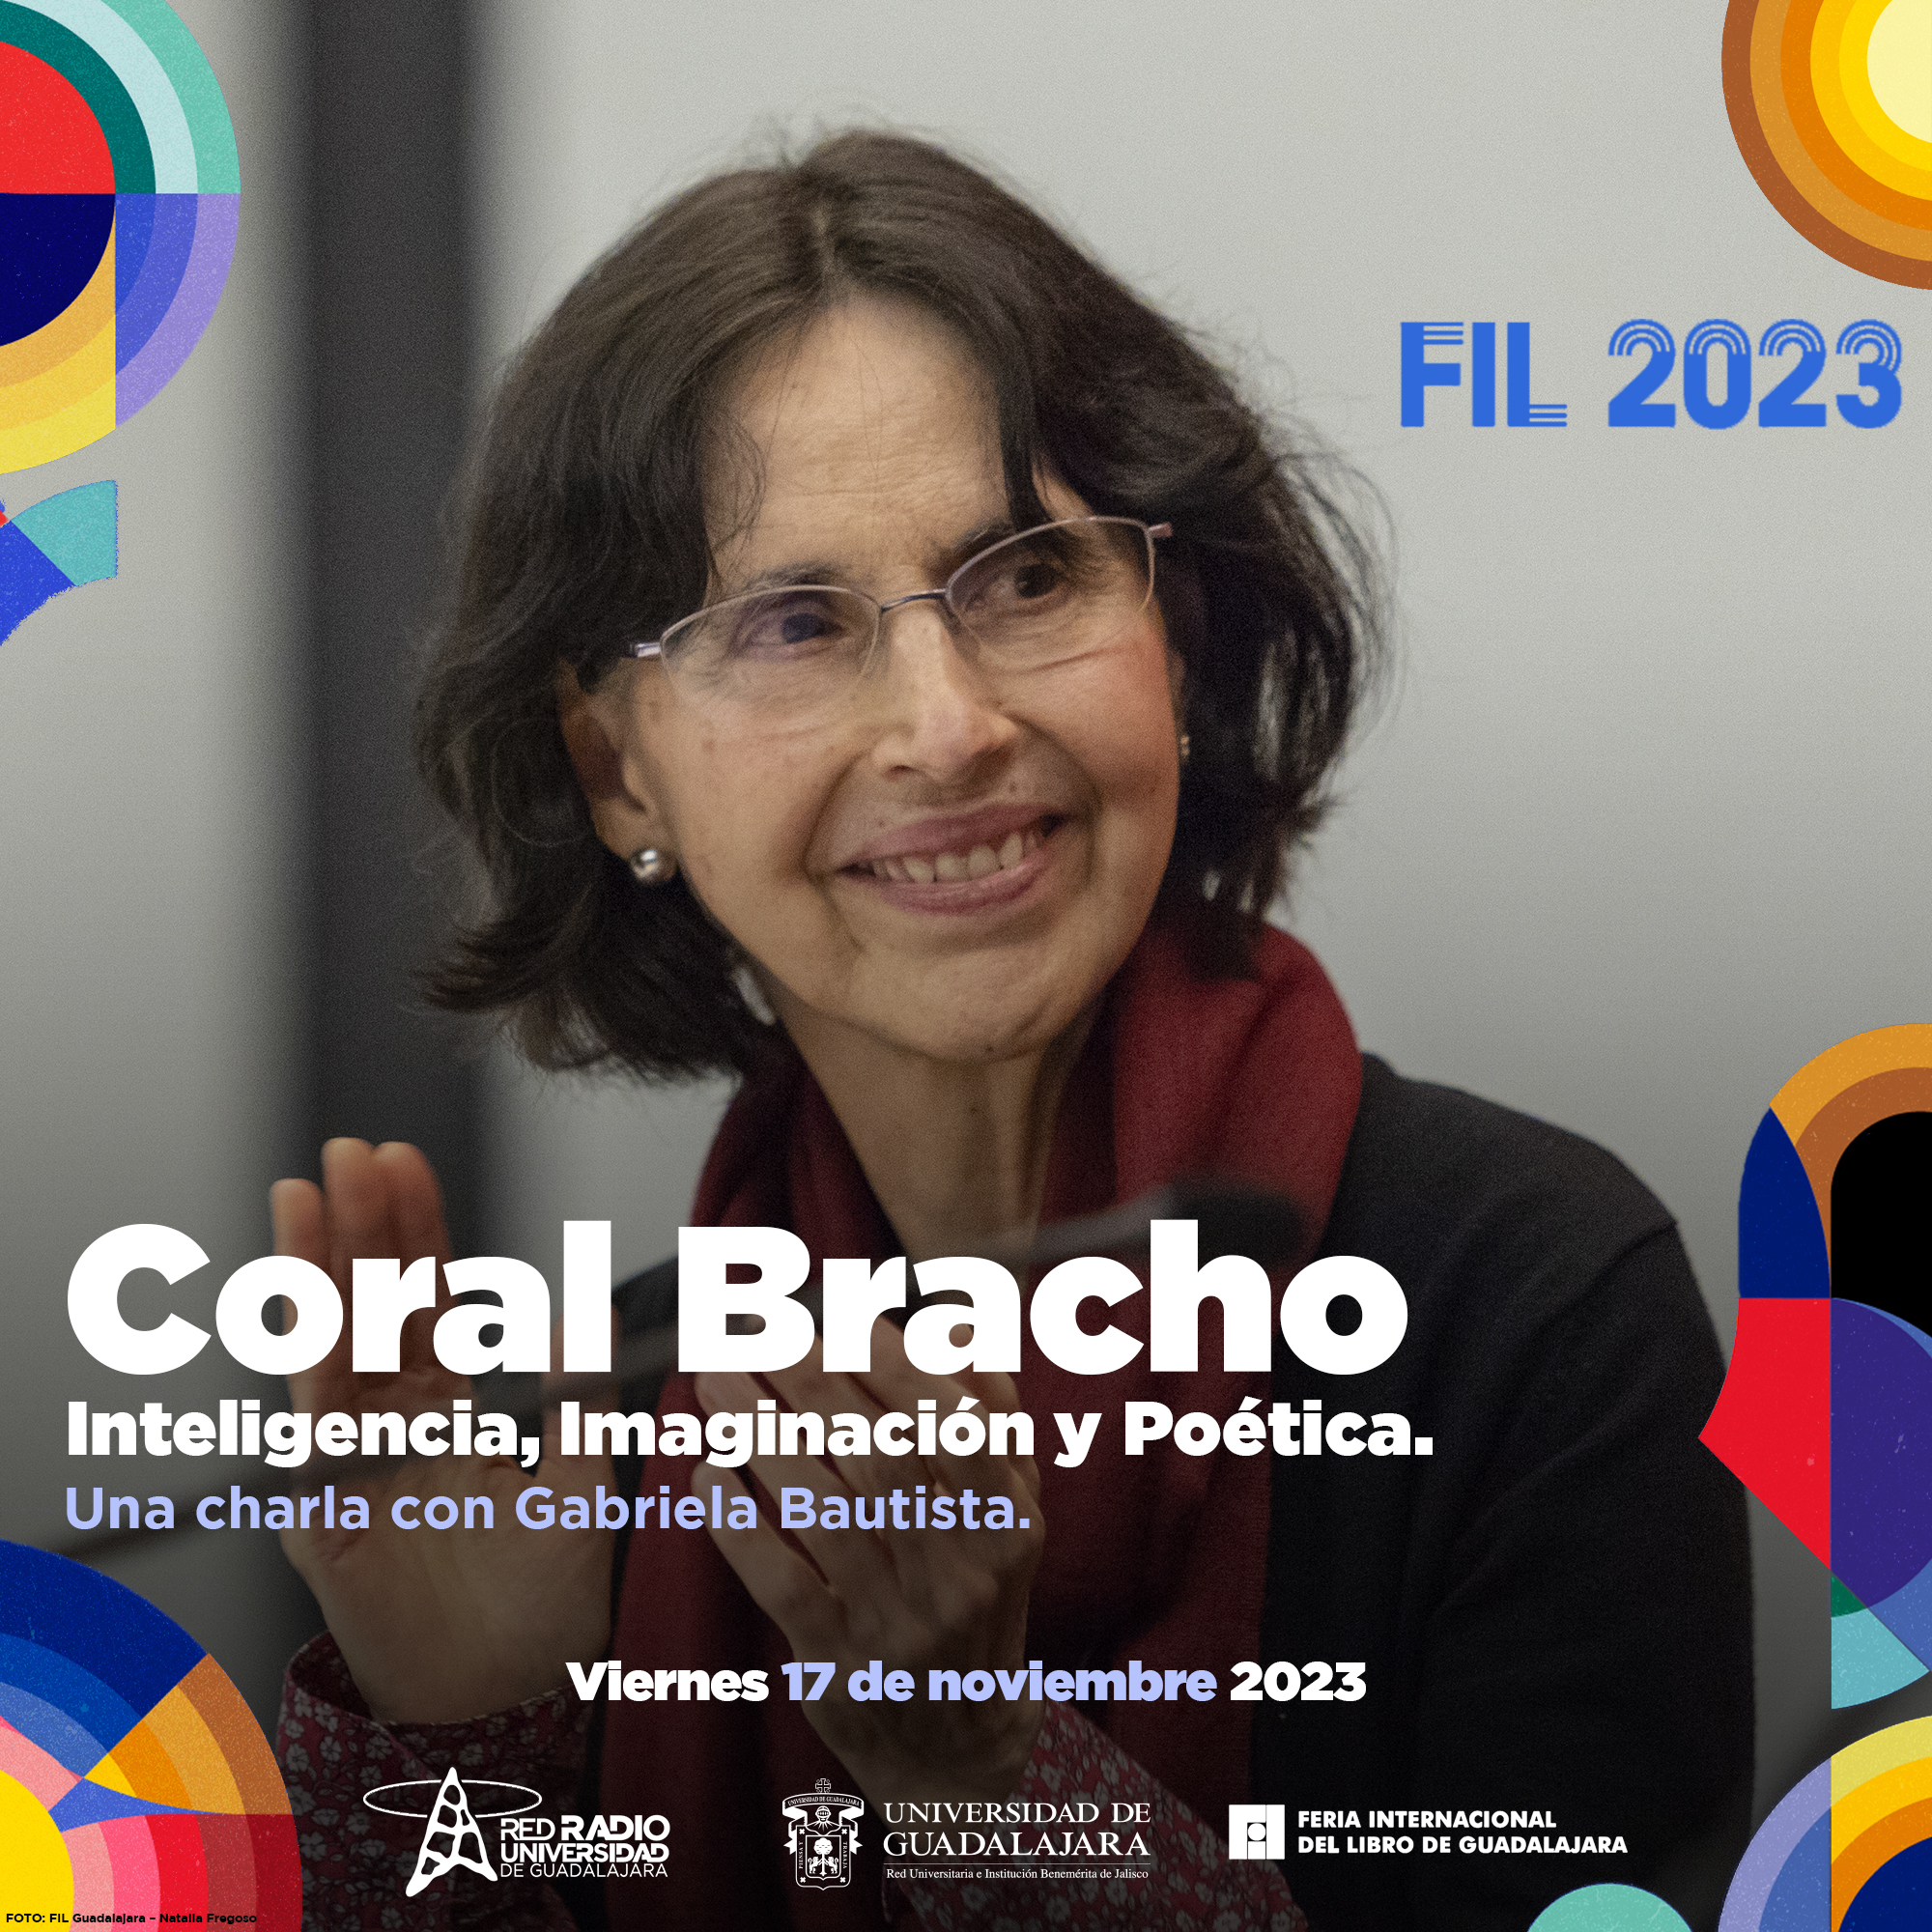 Cobertura FIL 2023 - Coral Bracho, Inteligencia, Imaginación y Poética. Una charla con Gabriela Bautista